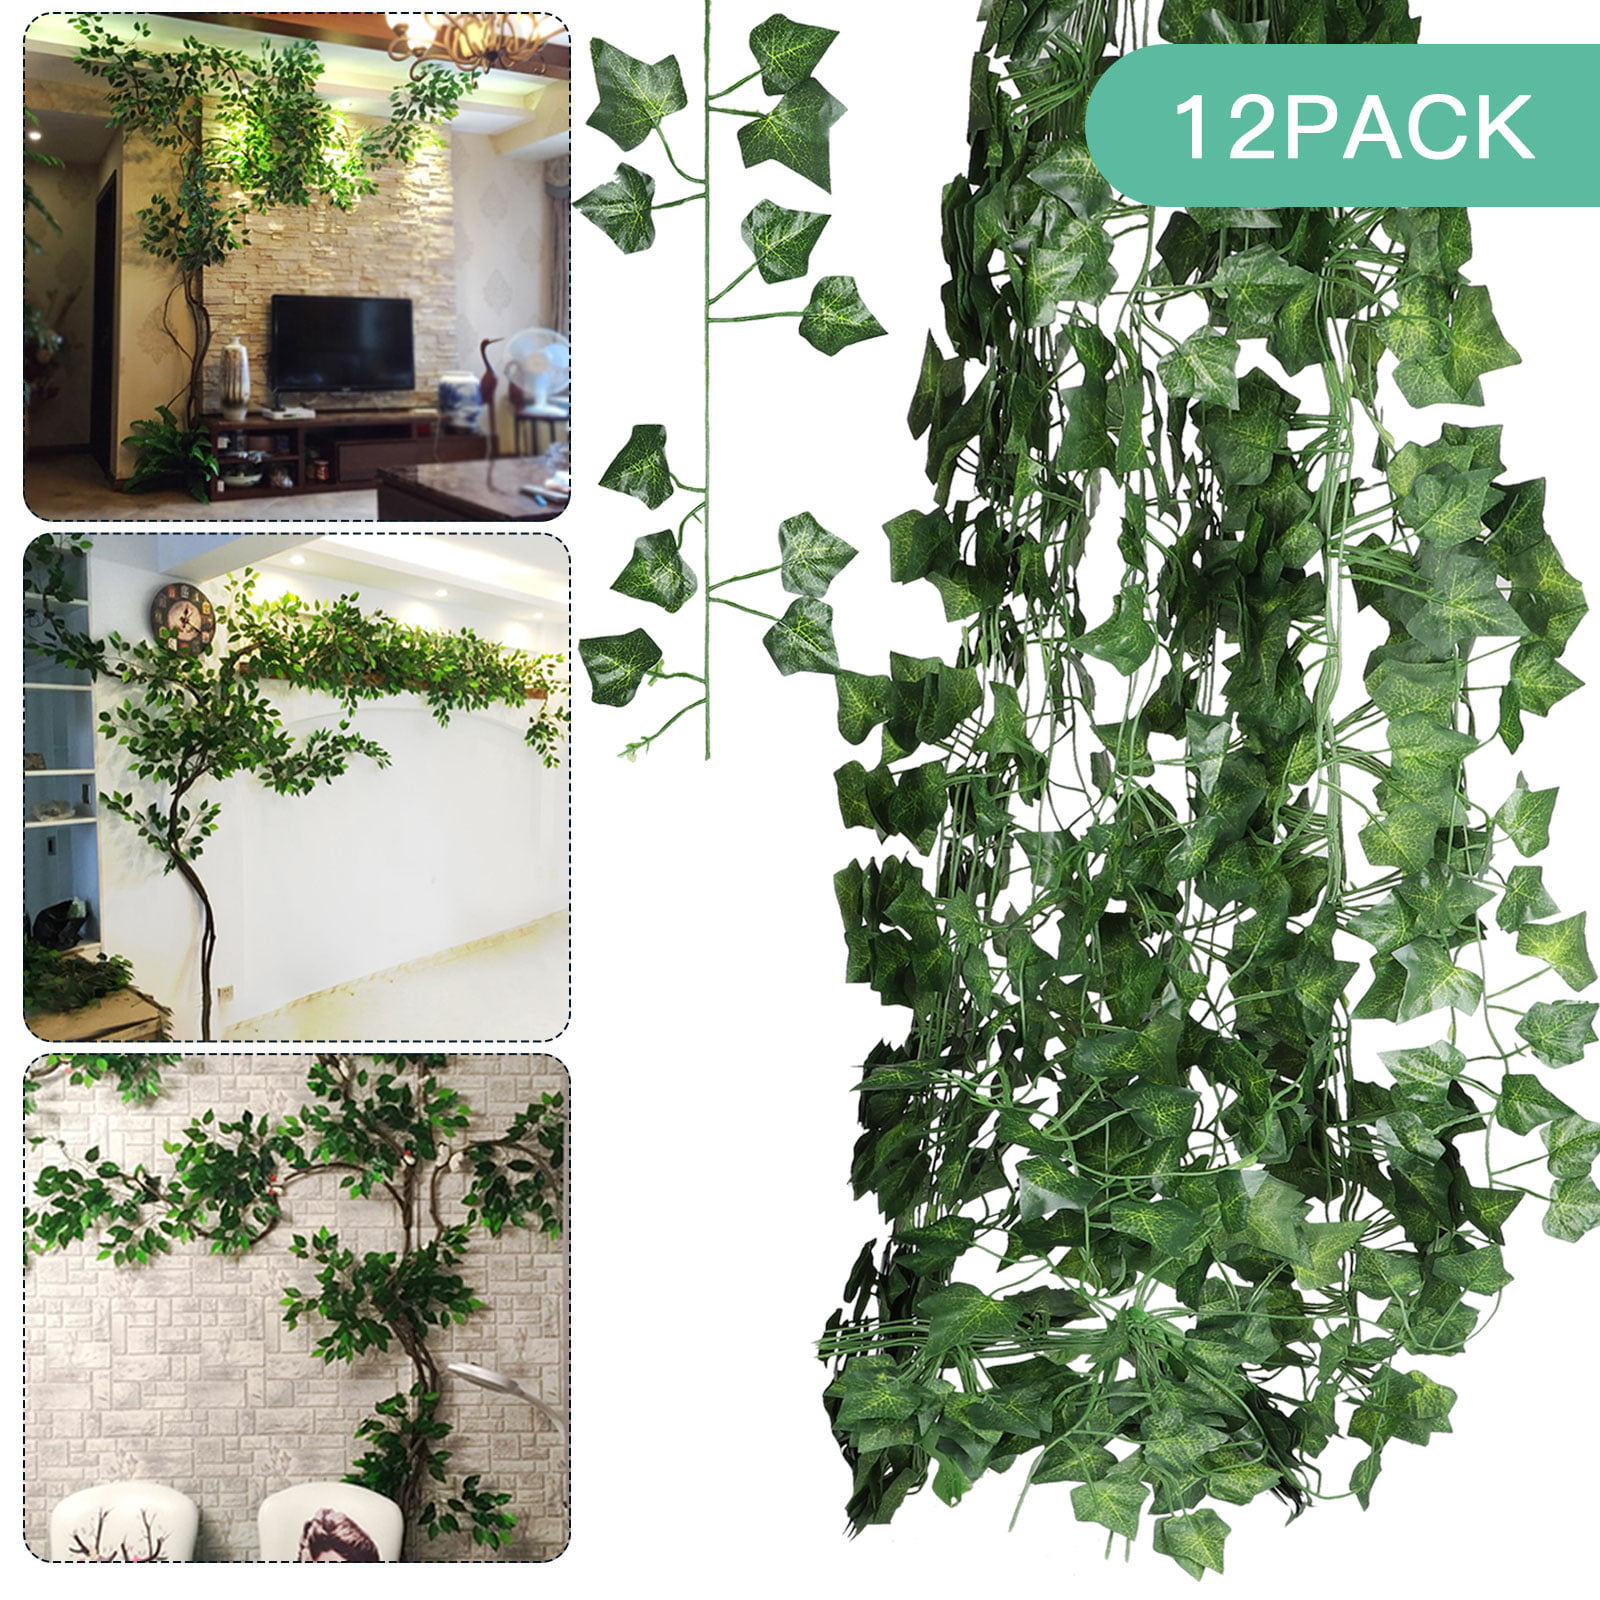 Artificial Hanging Plant LED Light 32FT Ivy Vine Garland Fake Home Garden Decor